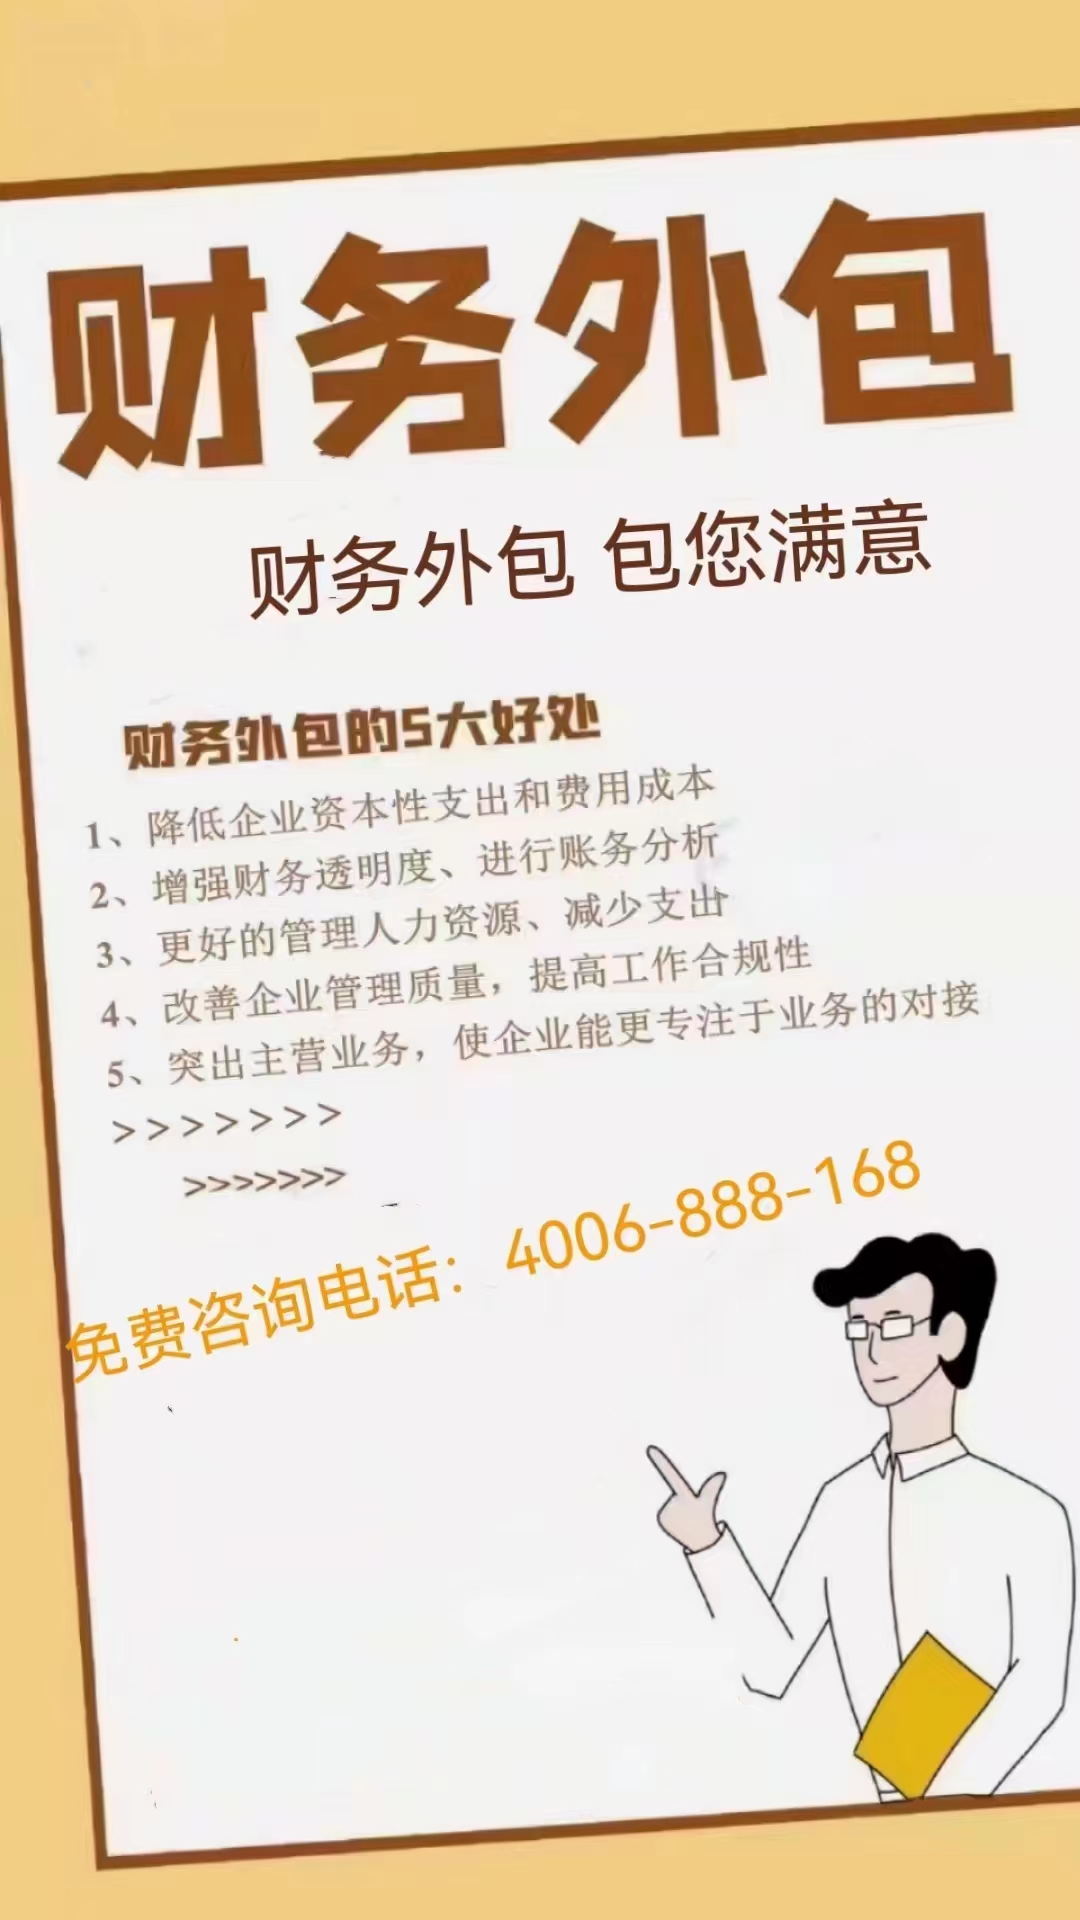 代办郑州建材机械设备租赁行业财务外包利润核算